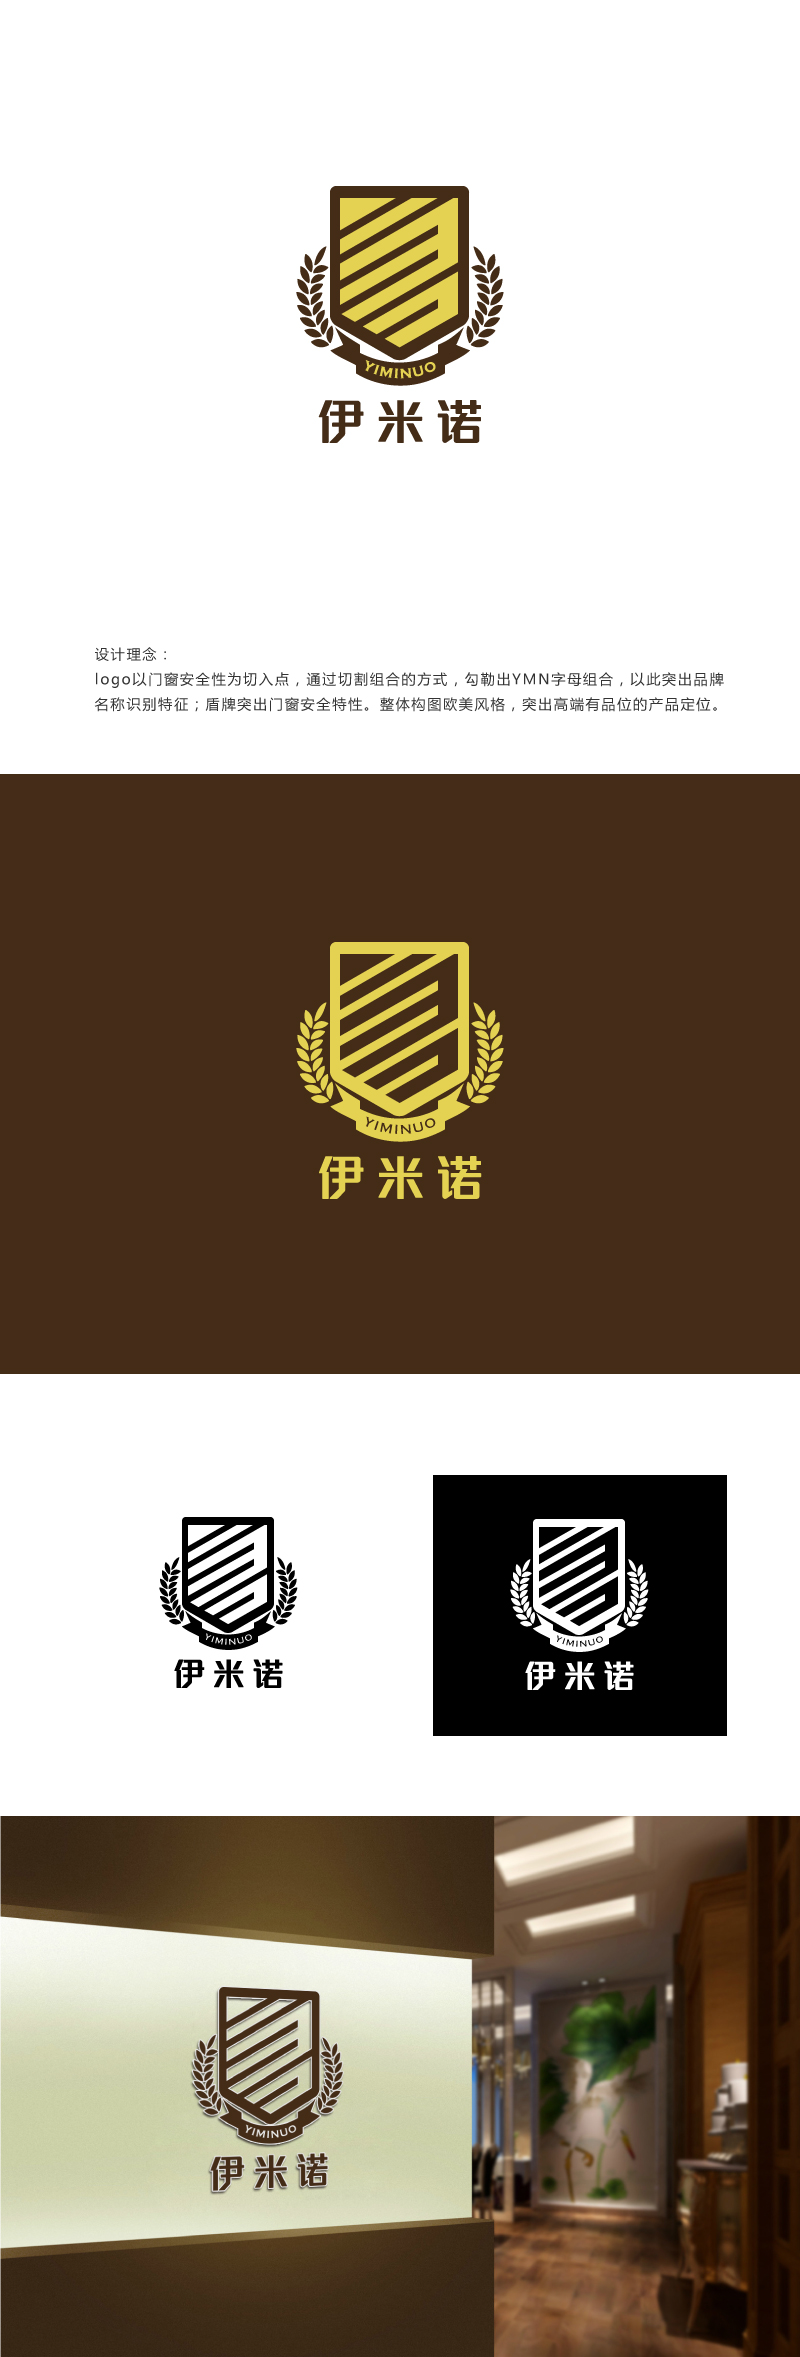 刘祥庆的伊米诺铝合金门窗logo设计